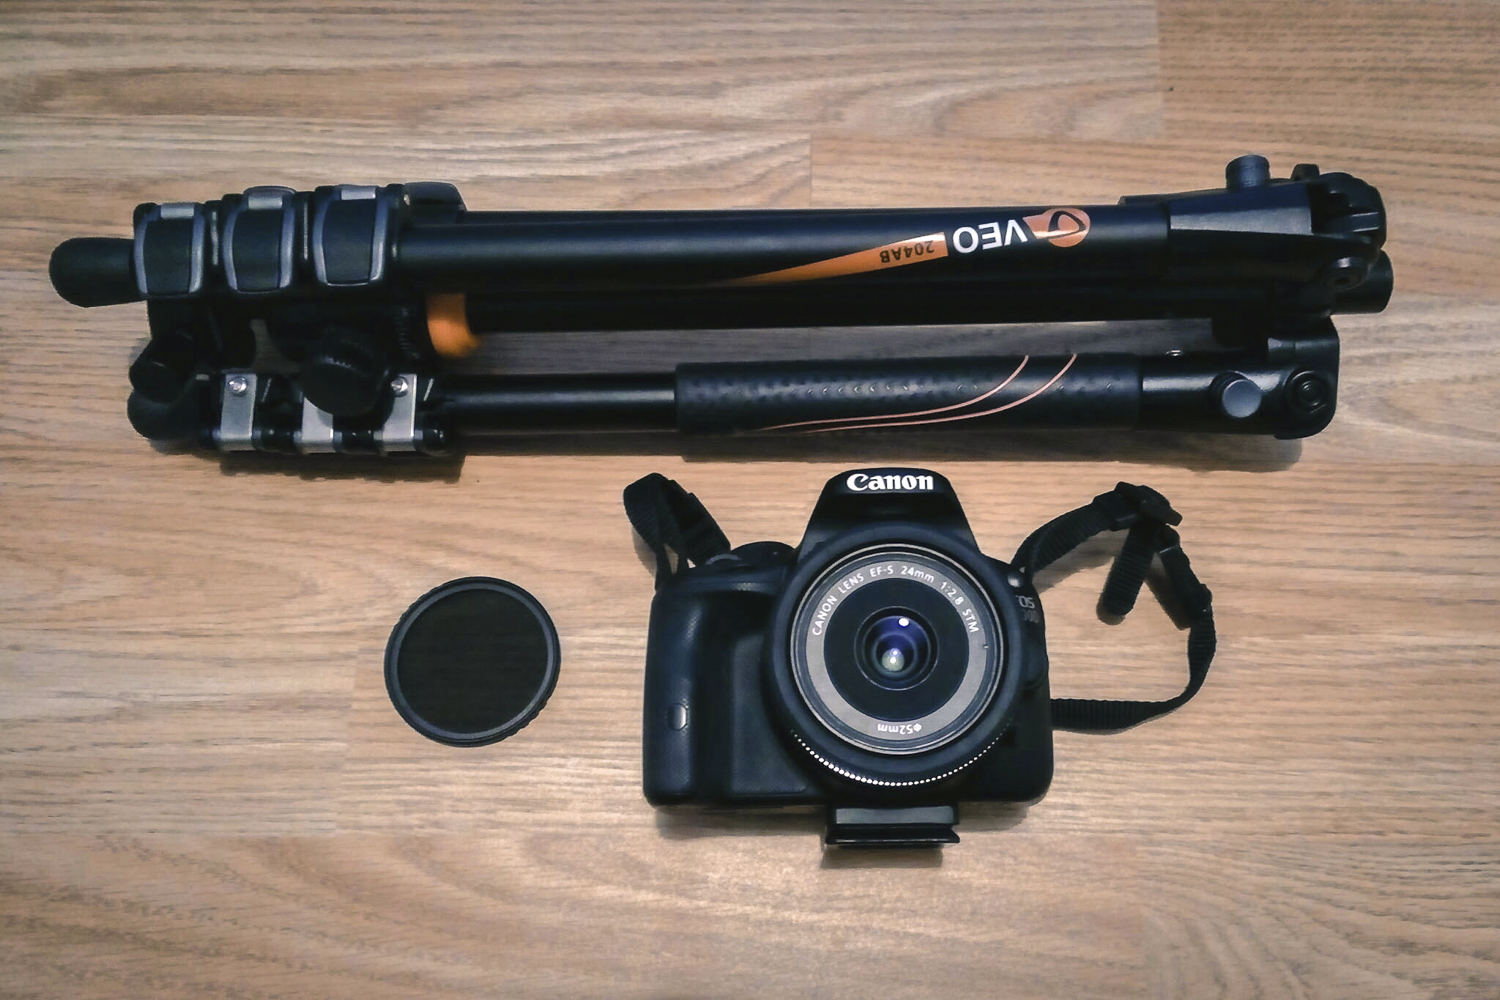 Použité vybavení – Canon EOS 100D, ND filtr s prodlužovacím faktorem 2 EV (ND4) a stativ Vanguard Veo 204 AB